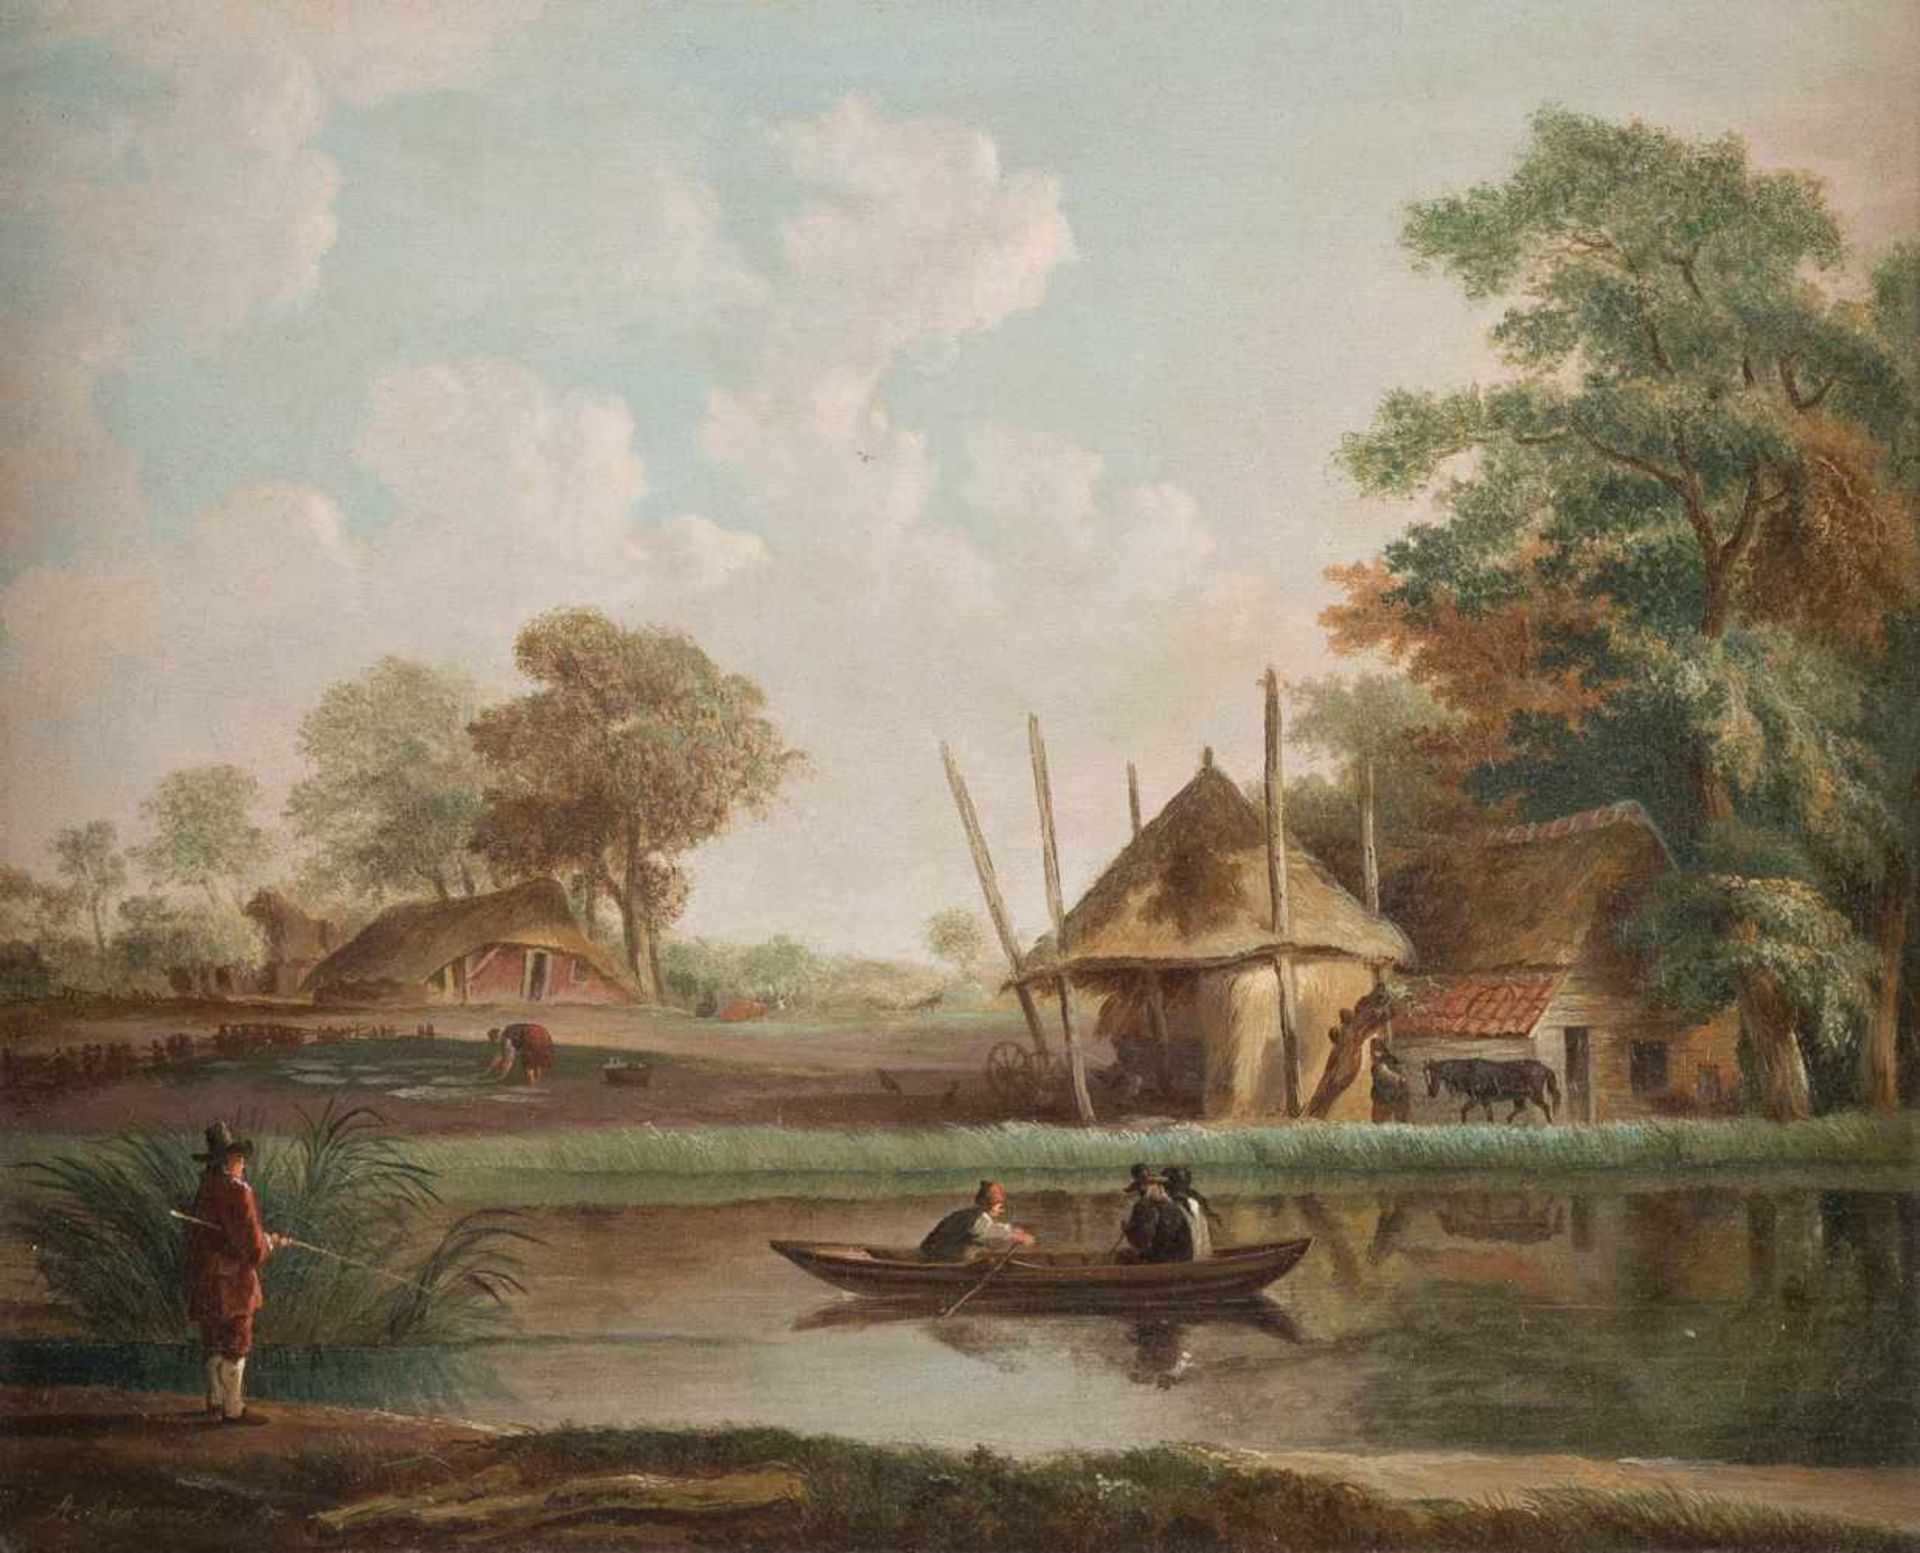 ANDRIES VERMEULEN1763 Dordrecht - 1814 AmsterdamFLUSSLANDSCHAFT MIT BAUERNHÄUSERN UND RUDERBOOT Öl